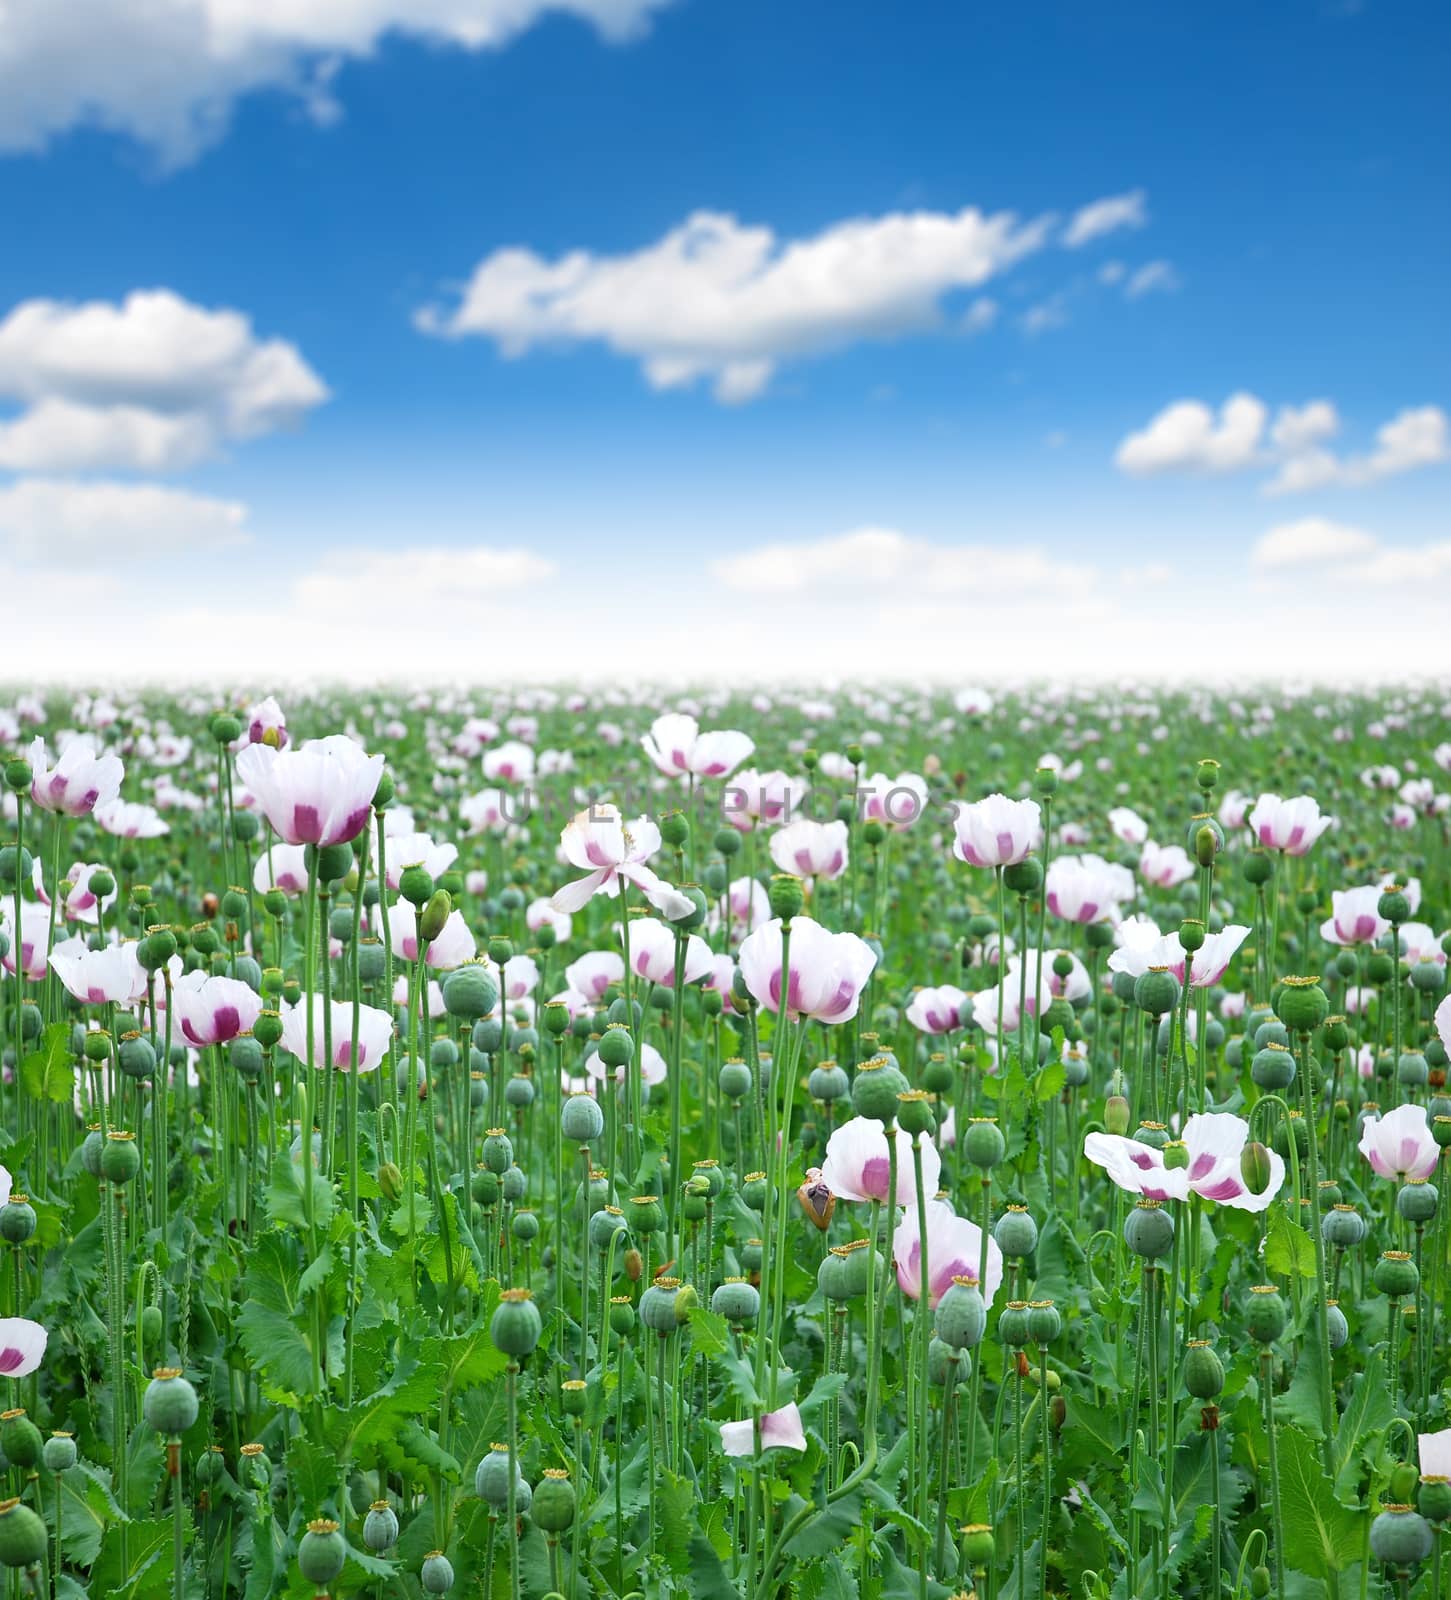 Opium poppy field by studio023